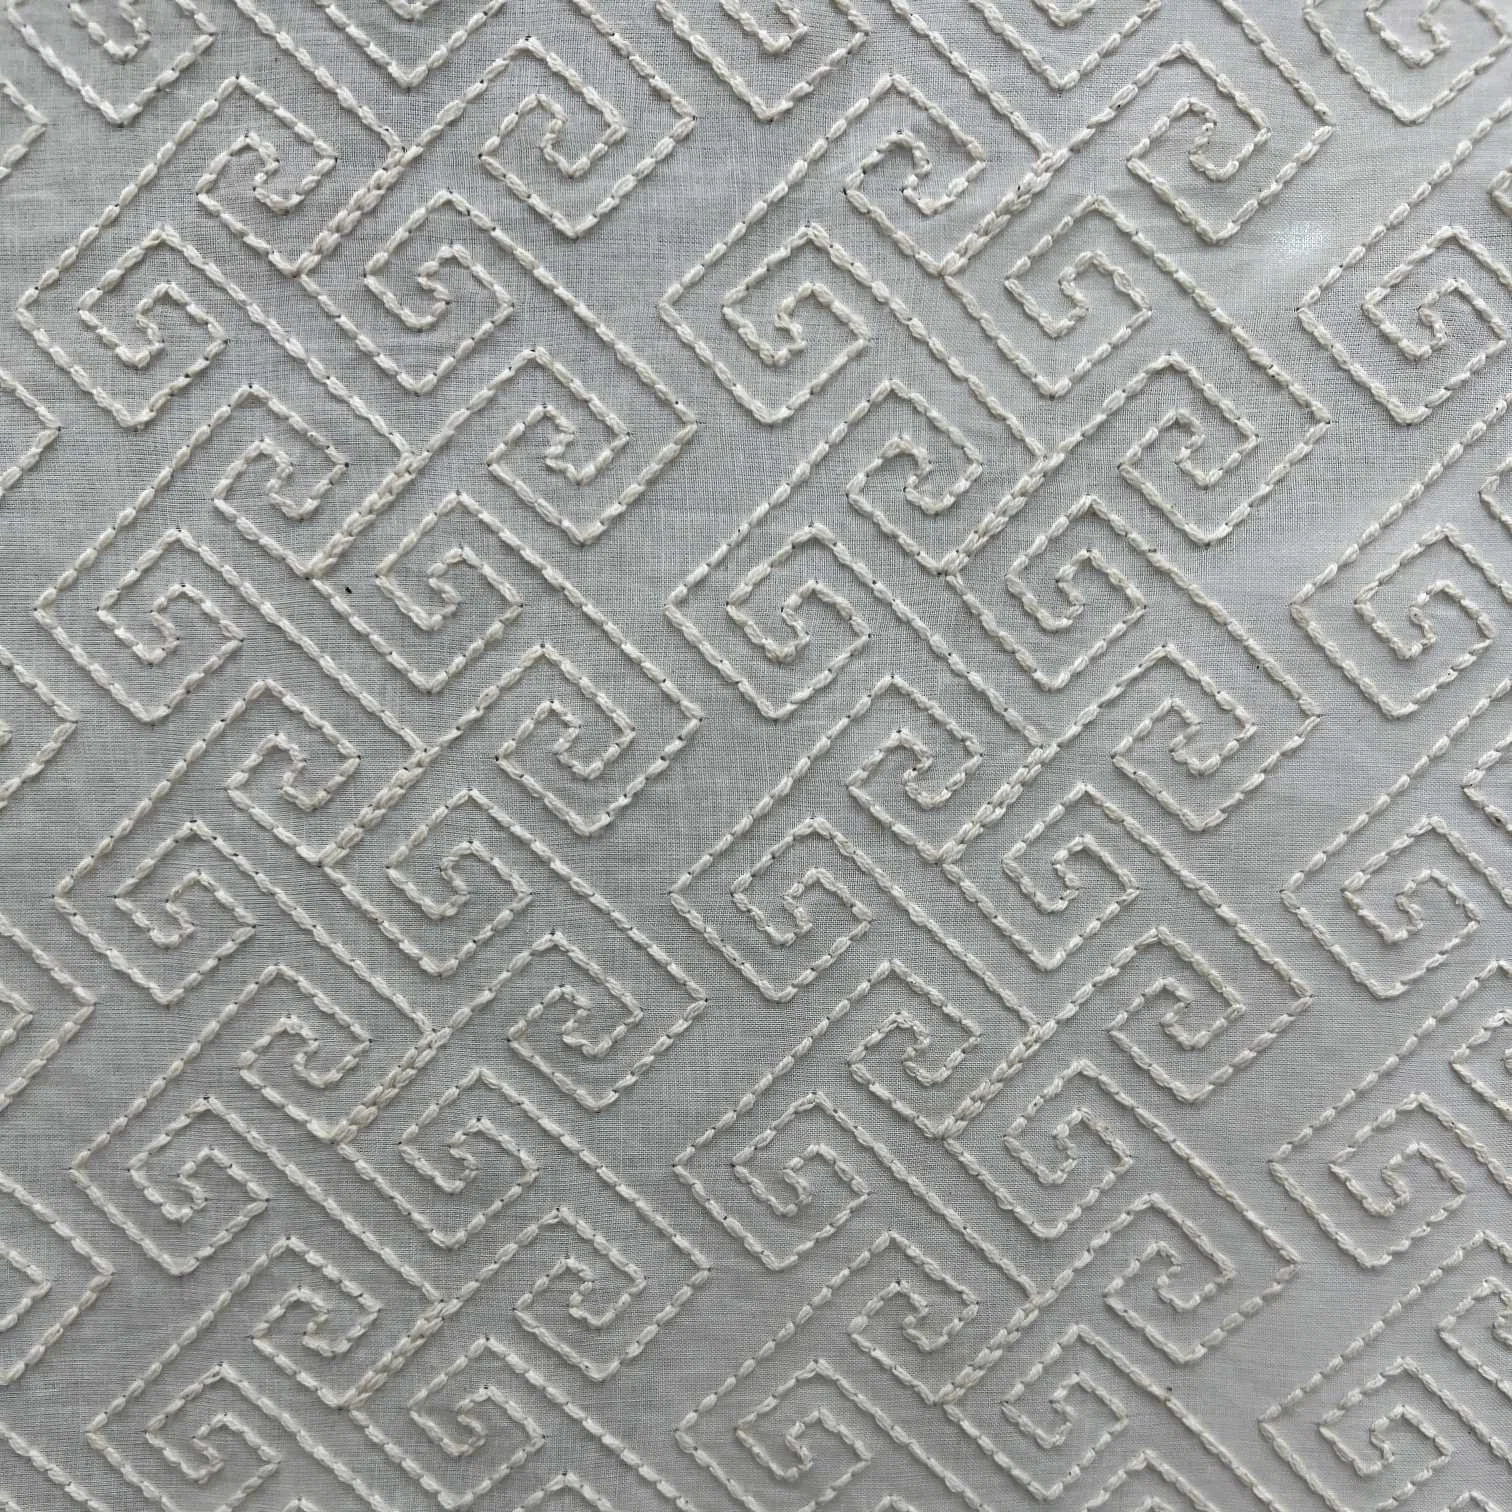 Gz6069 bordado de cuerda tejido de encaje bordado de algodón